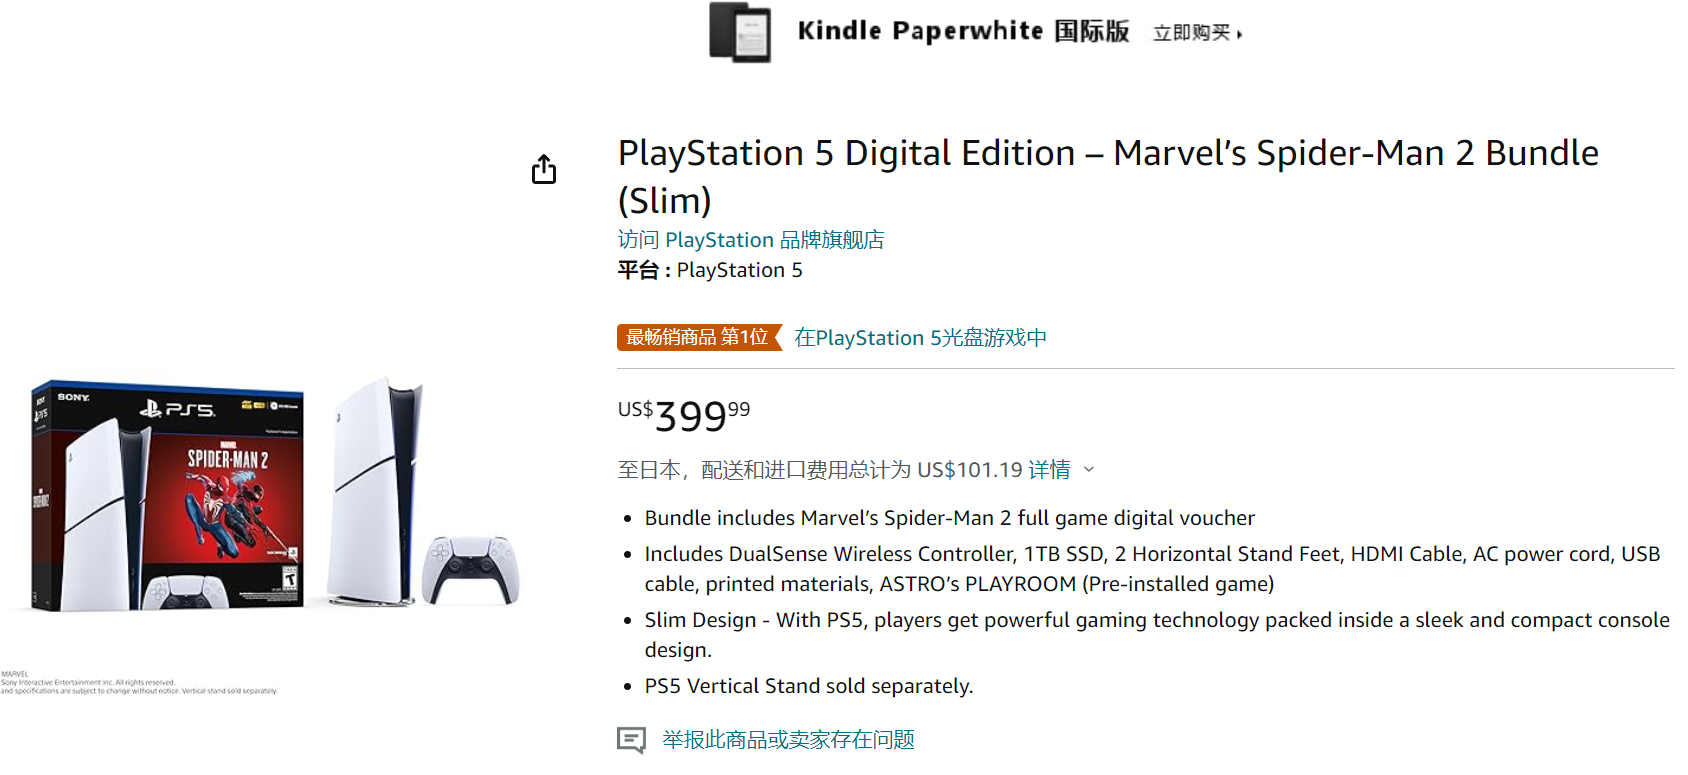 《漫威蜘蛛俠2》PS5捆綁包上架亞馬遜 售價399美元